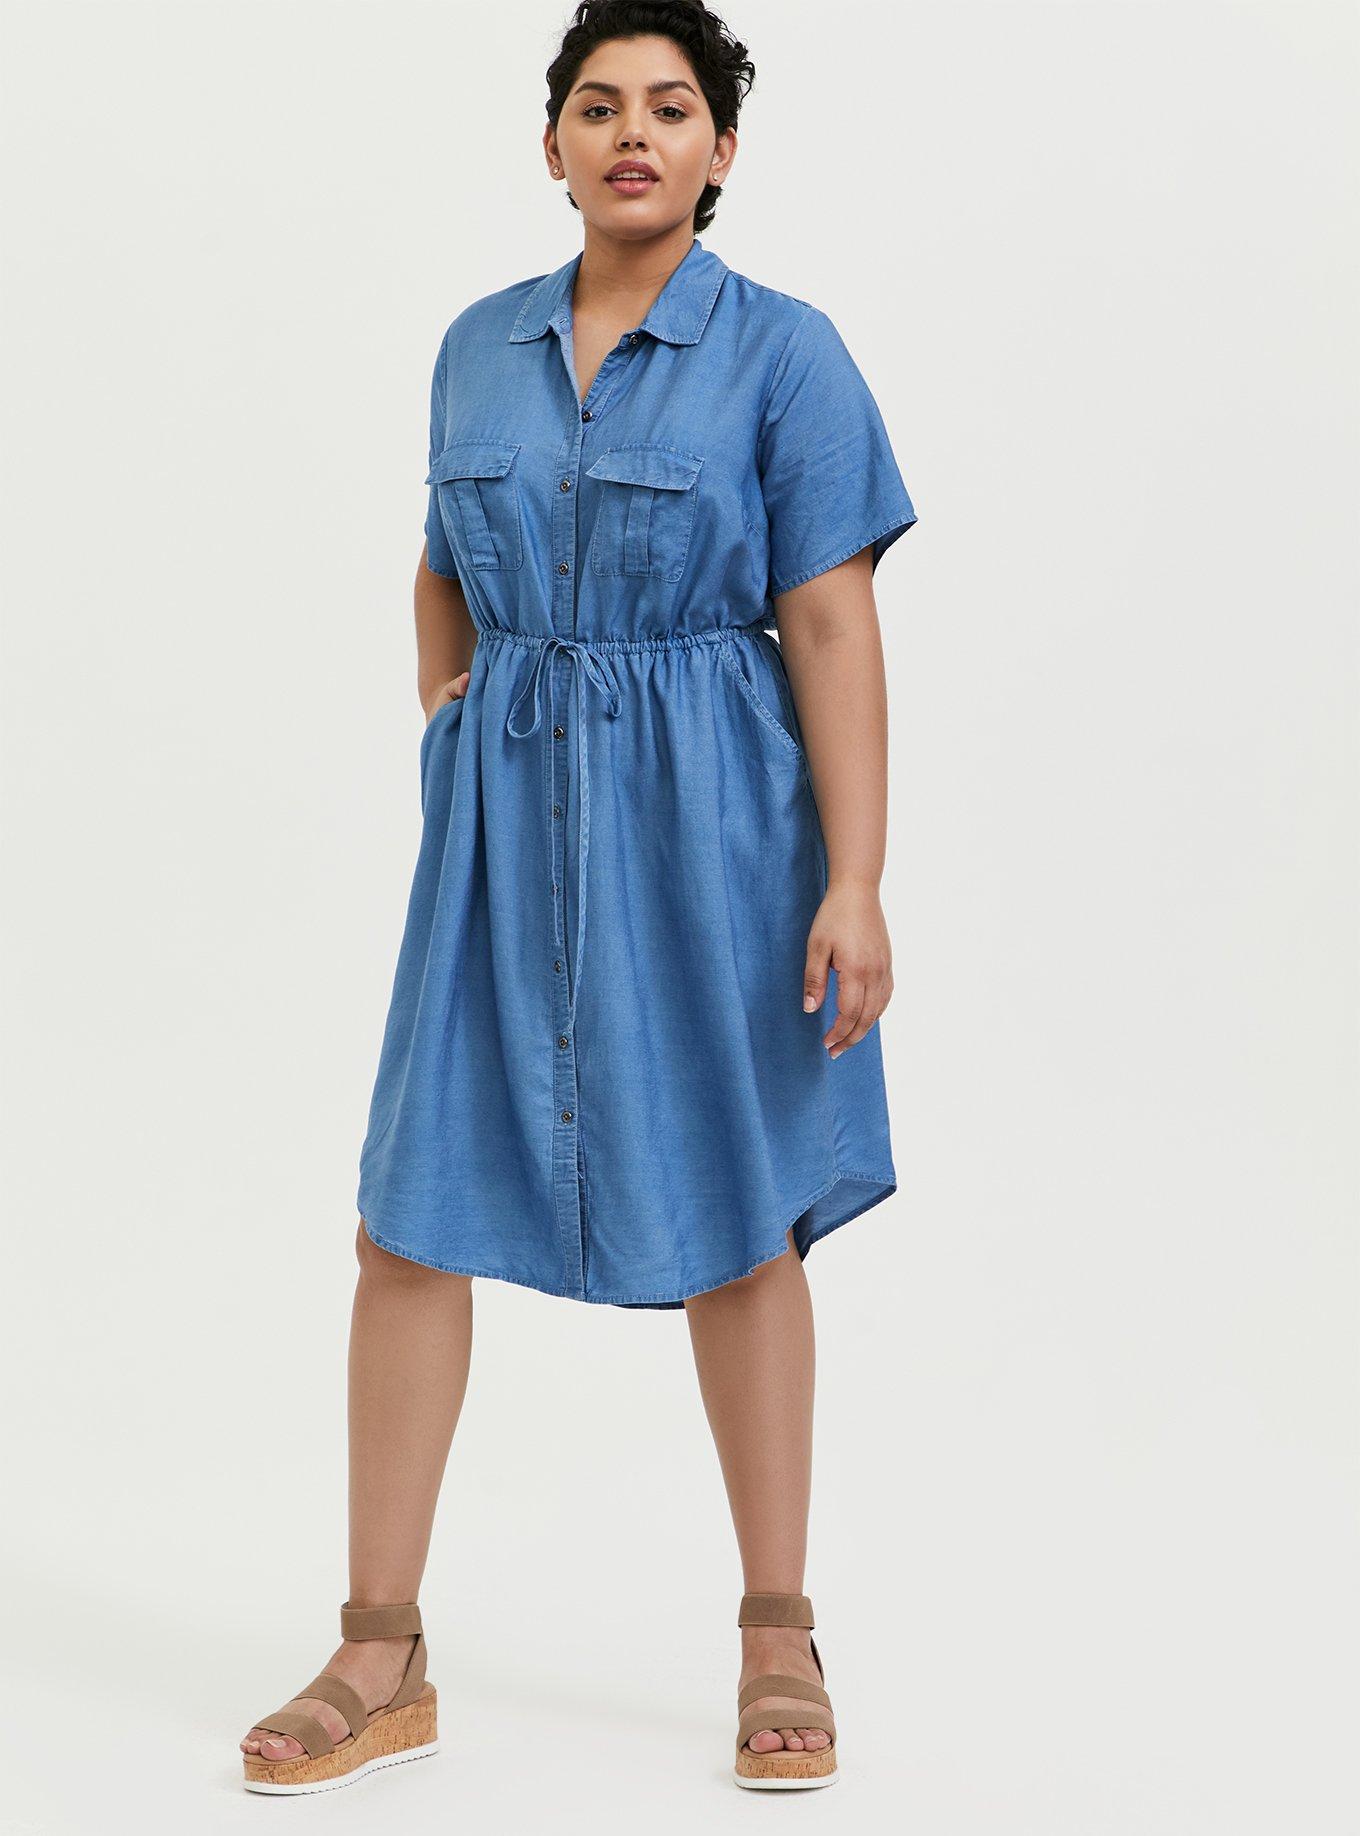 NWT Torrid 6 Blue Mini Textured Rayon Shirt Dress; Plus Size Women's 6X,  30, 30W